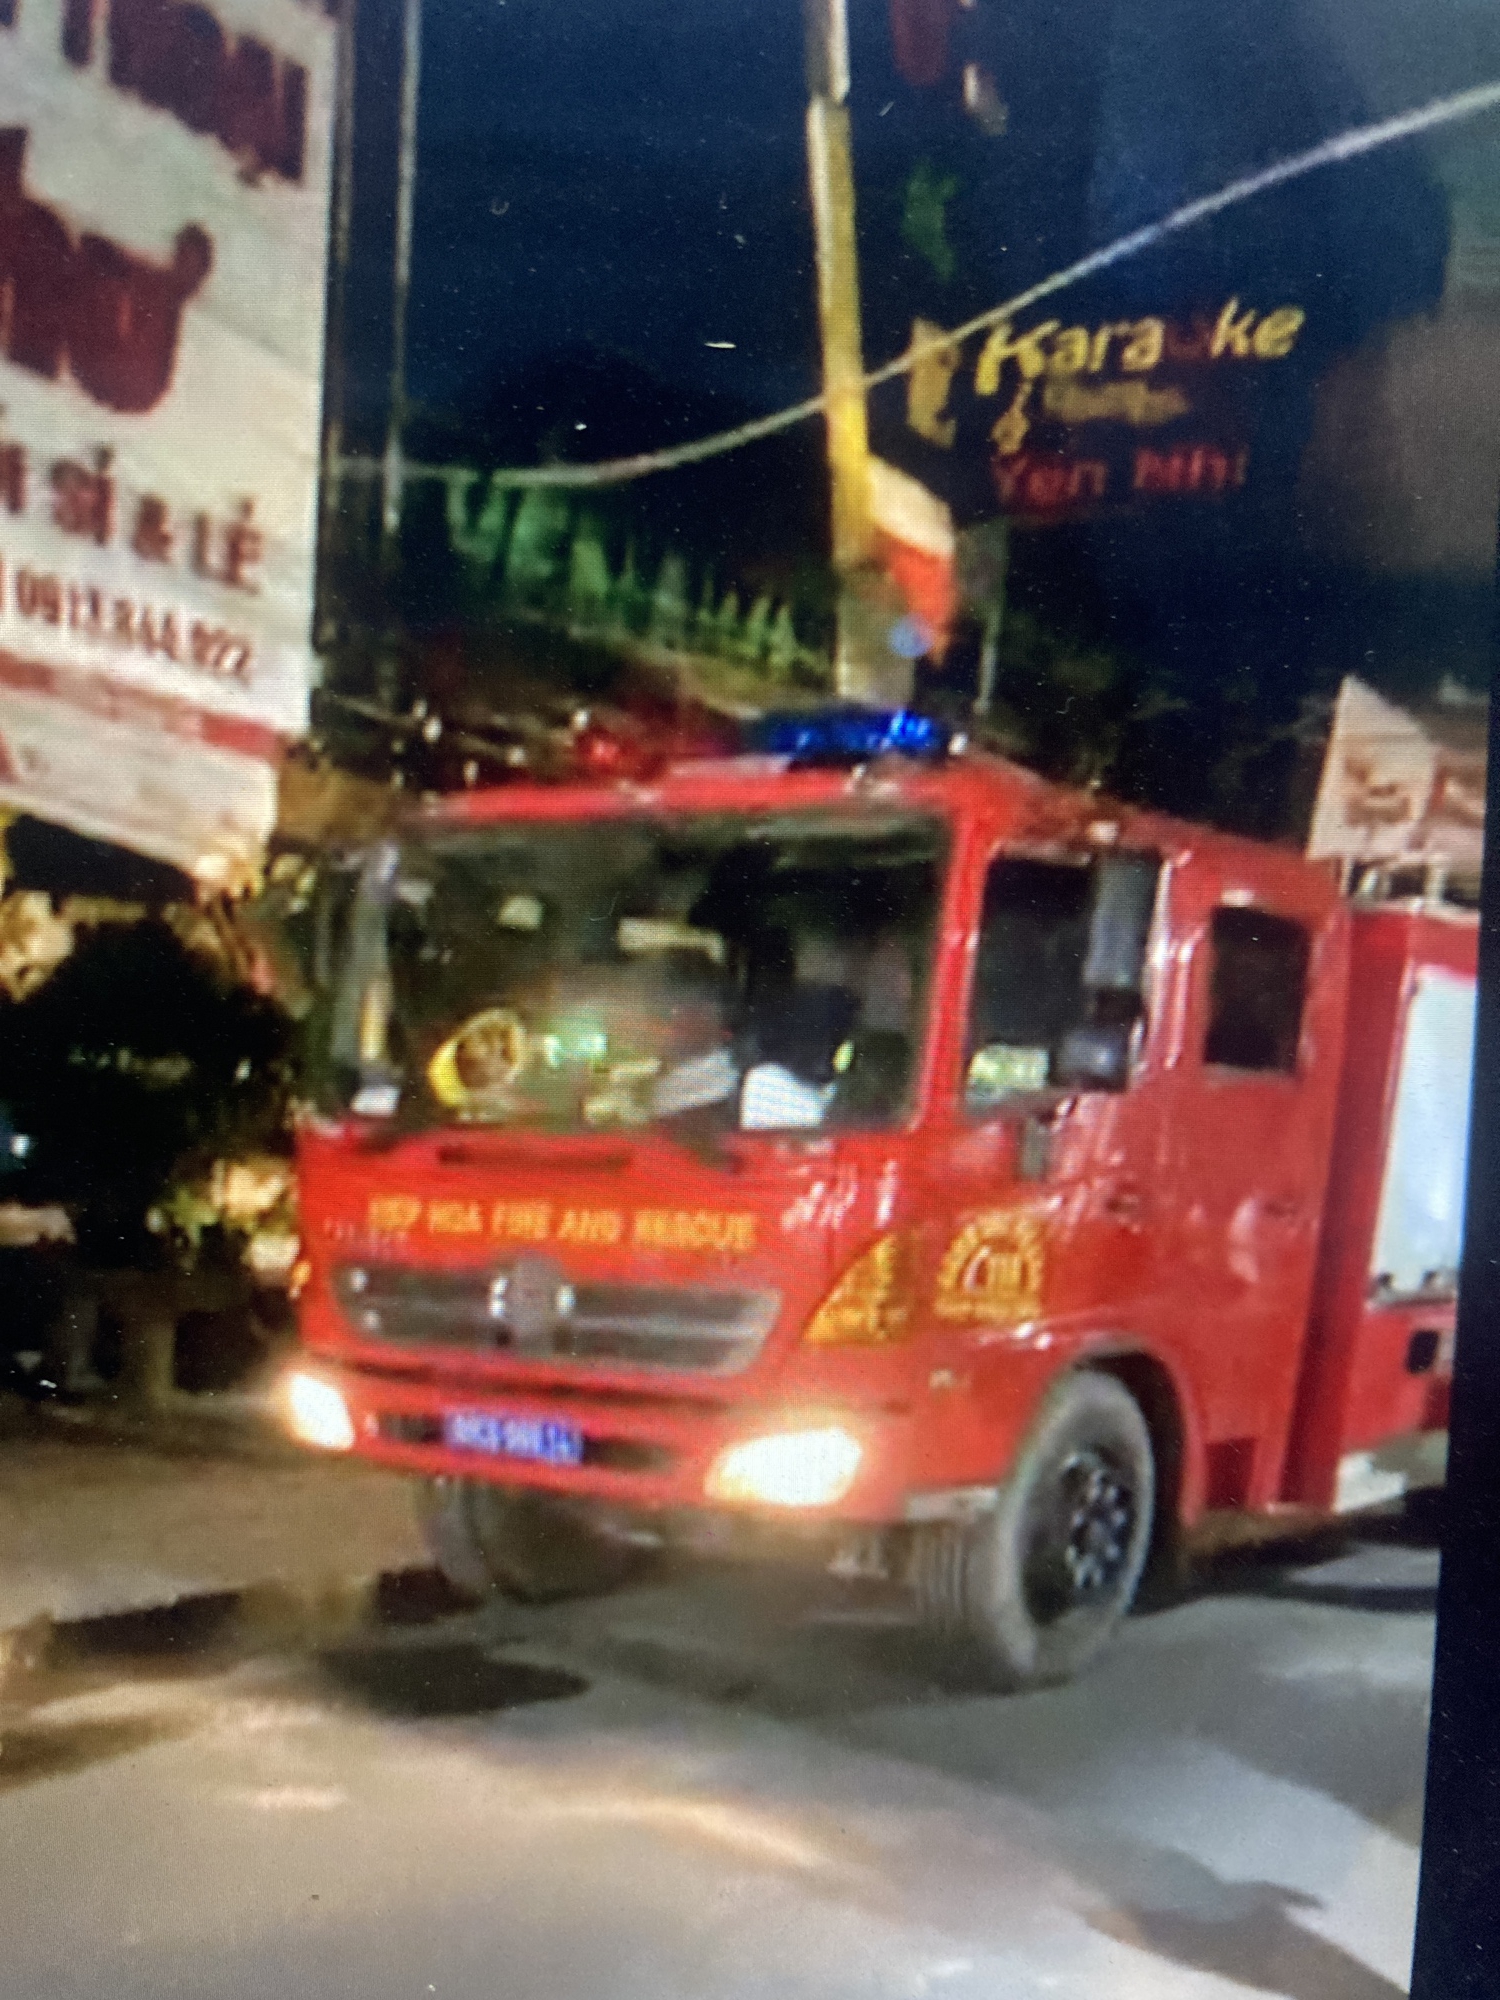 TRỰC TIẾP: Cháy quán karaoke ở Đồng Nai, cảnh sát PCCC đục tường cứu người - Ảnh 6.